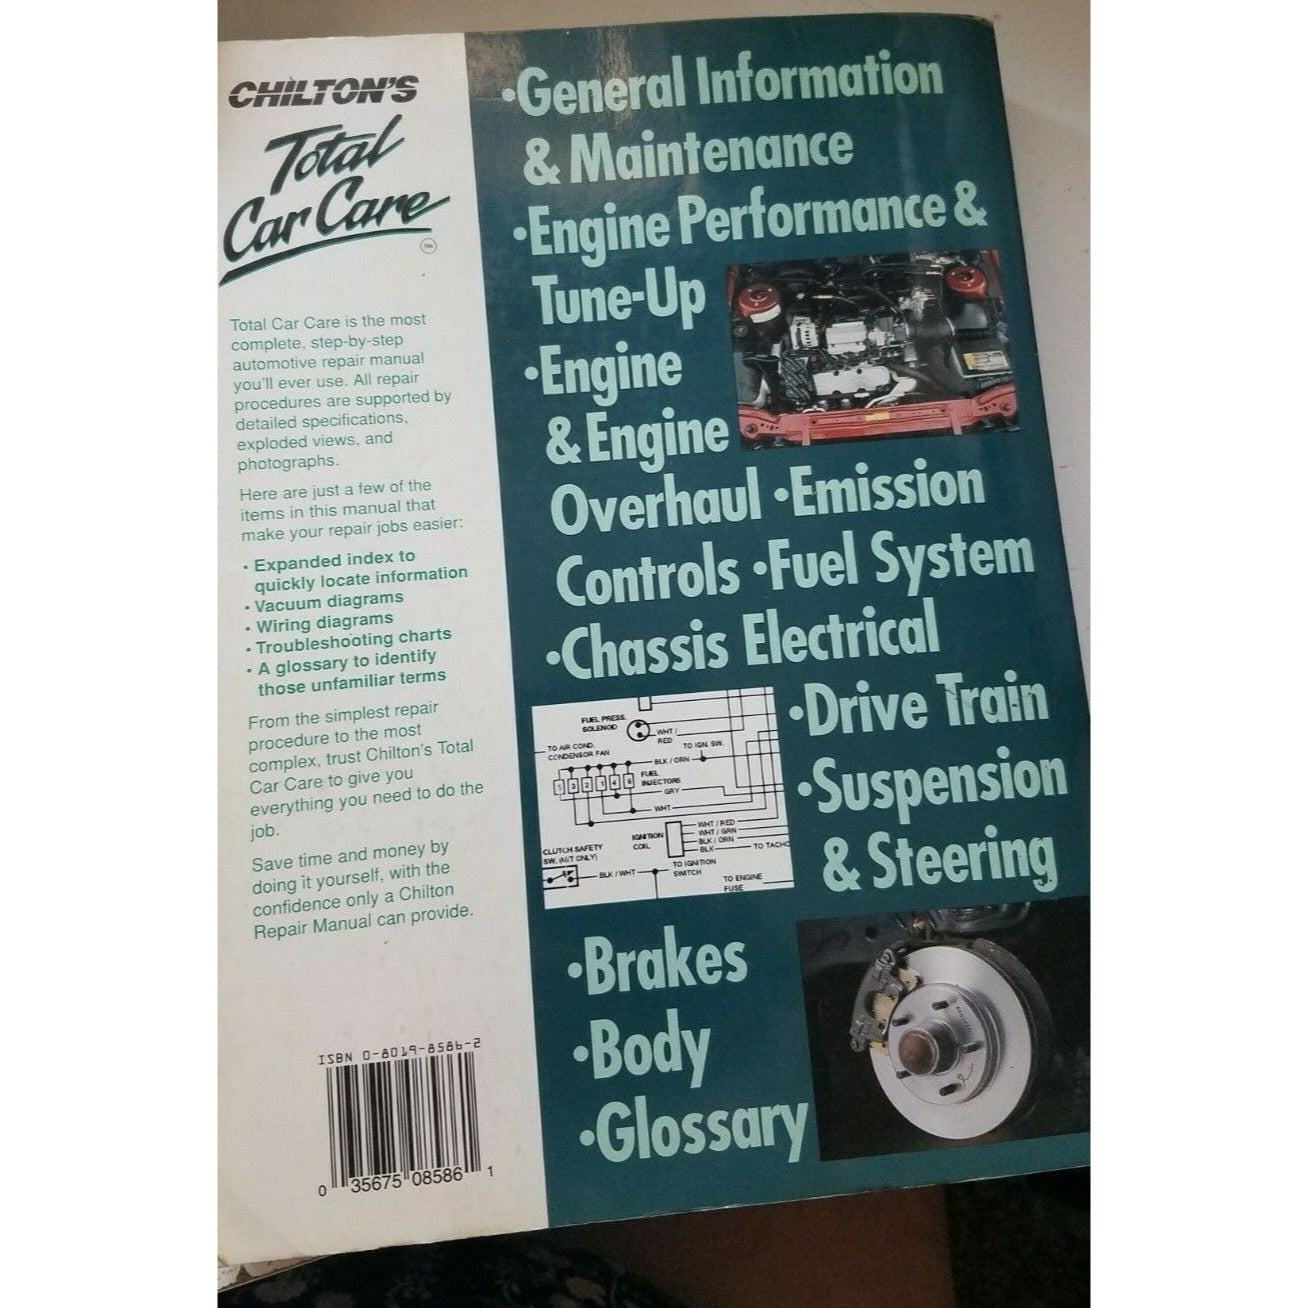 1970 - 1987 Chilton's Toyota Corolla  Repair Manual Wiring & Vacuum Diagrams